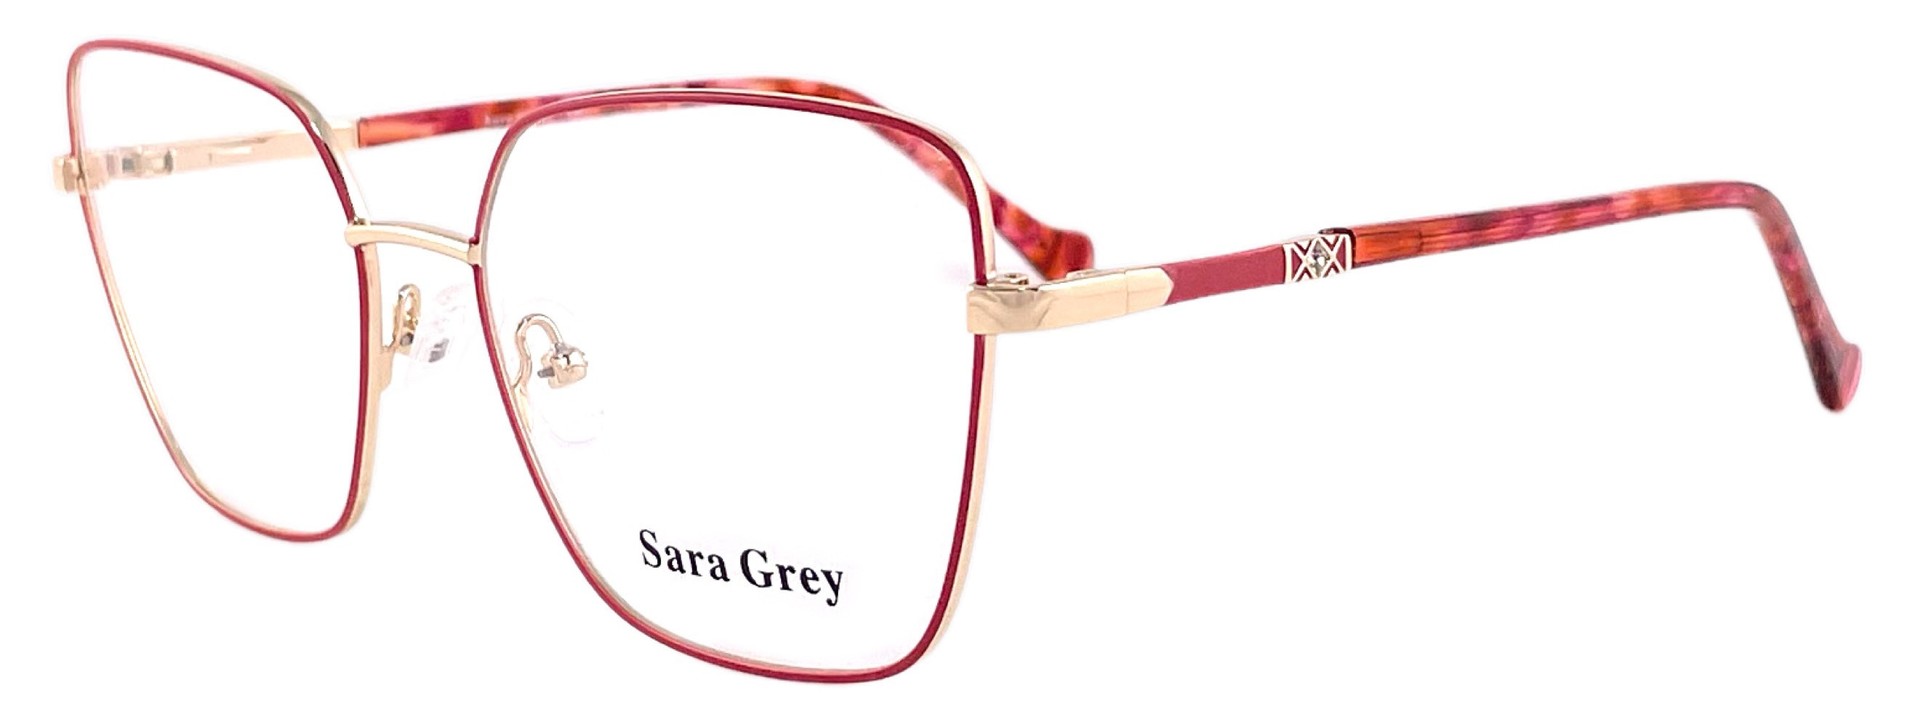 Sara Grey XC62162 C2 2